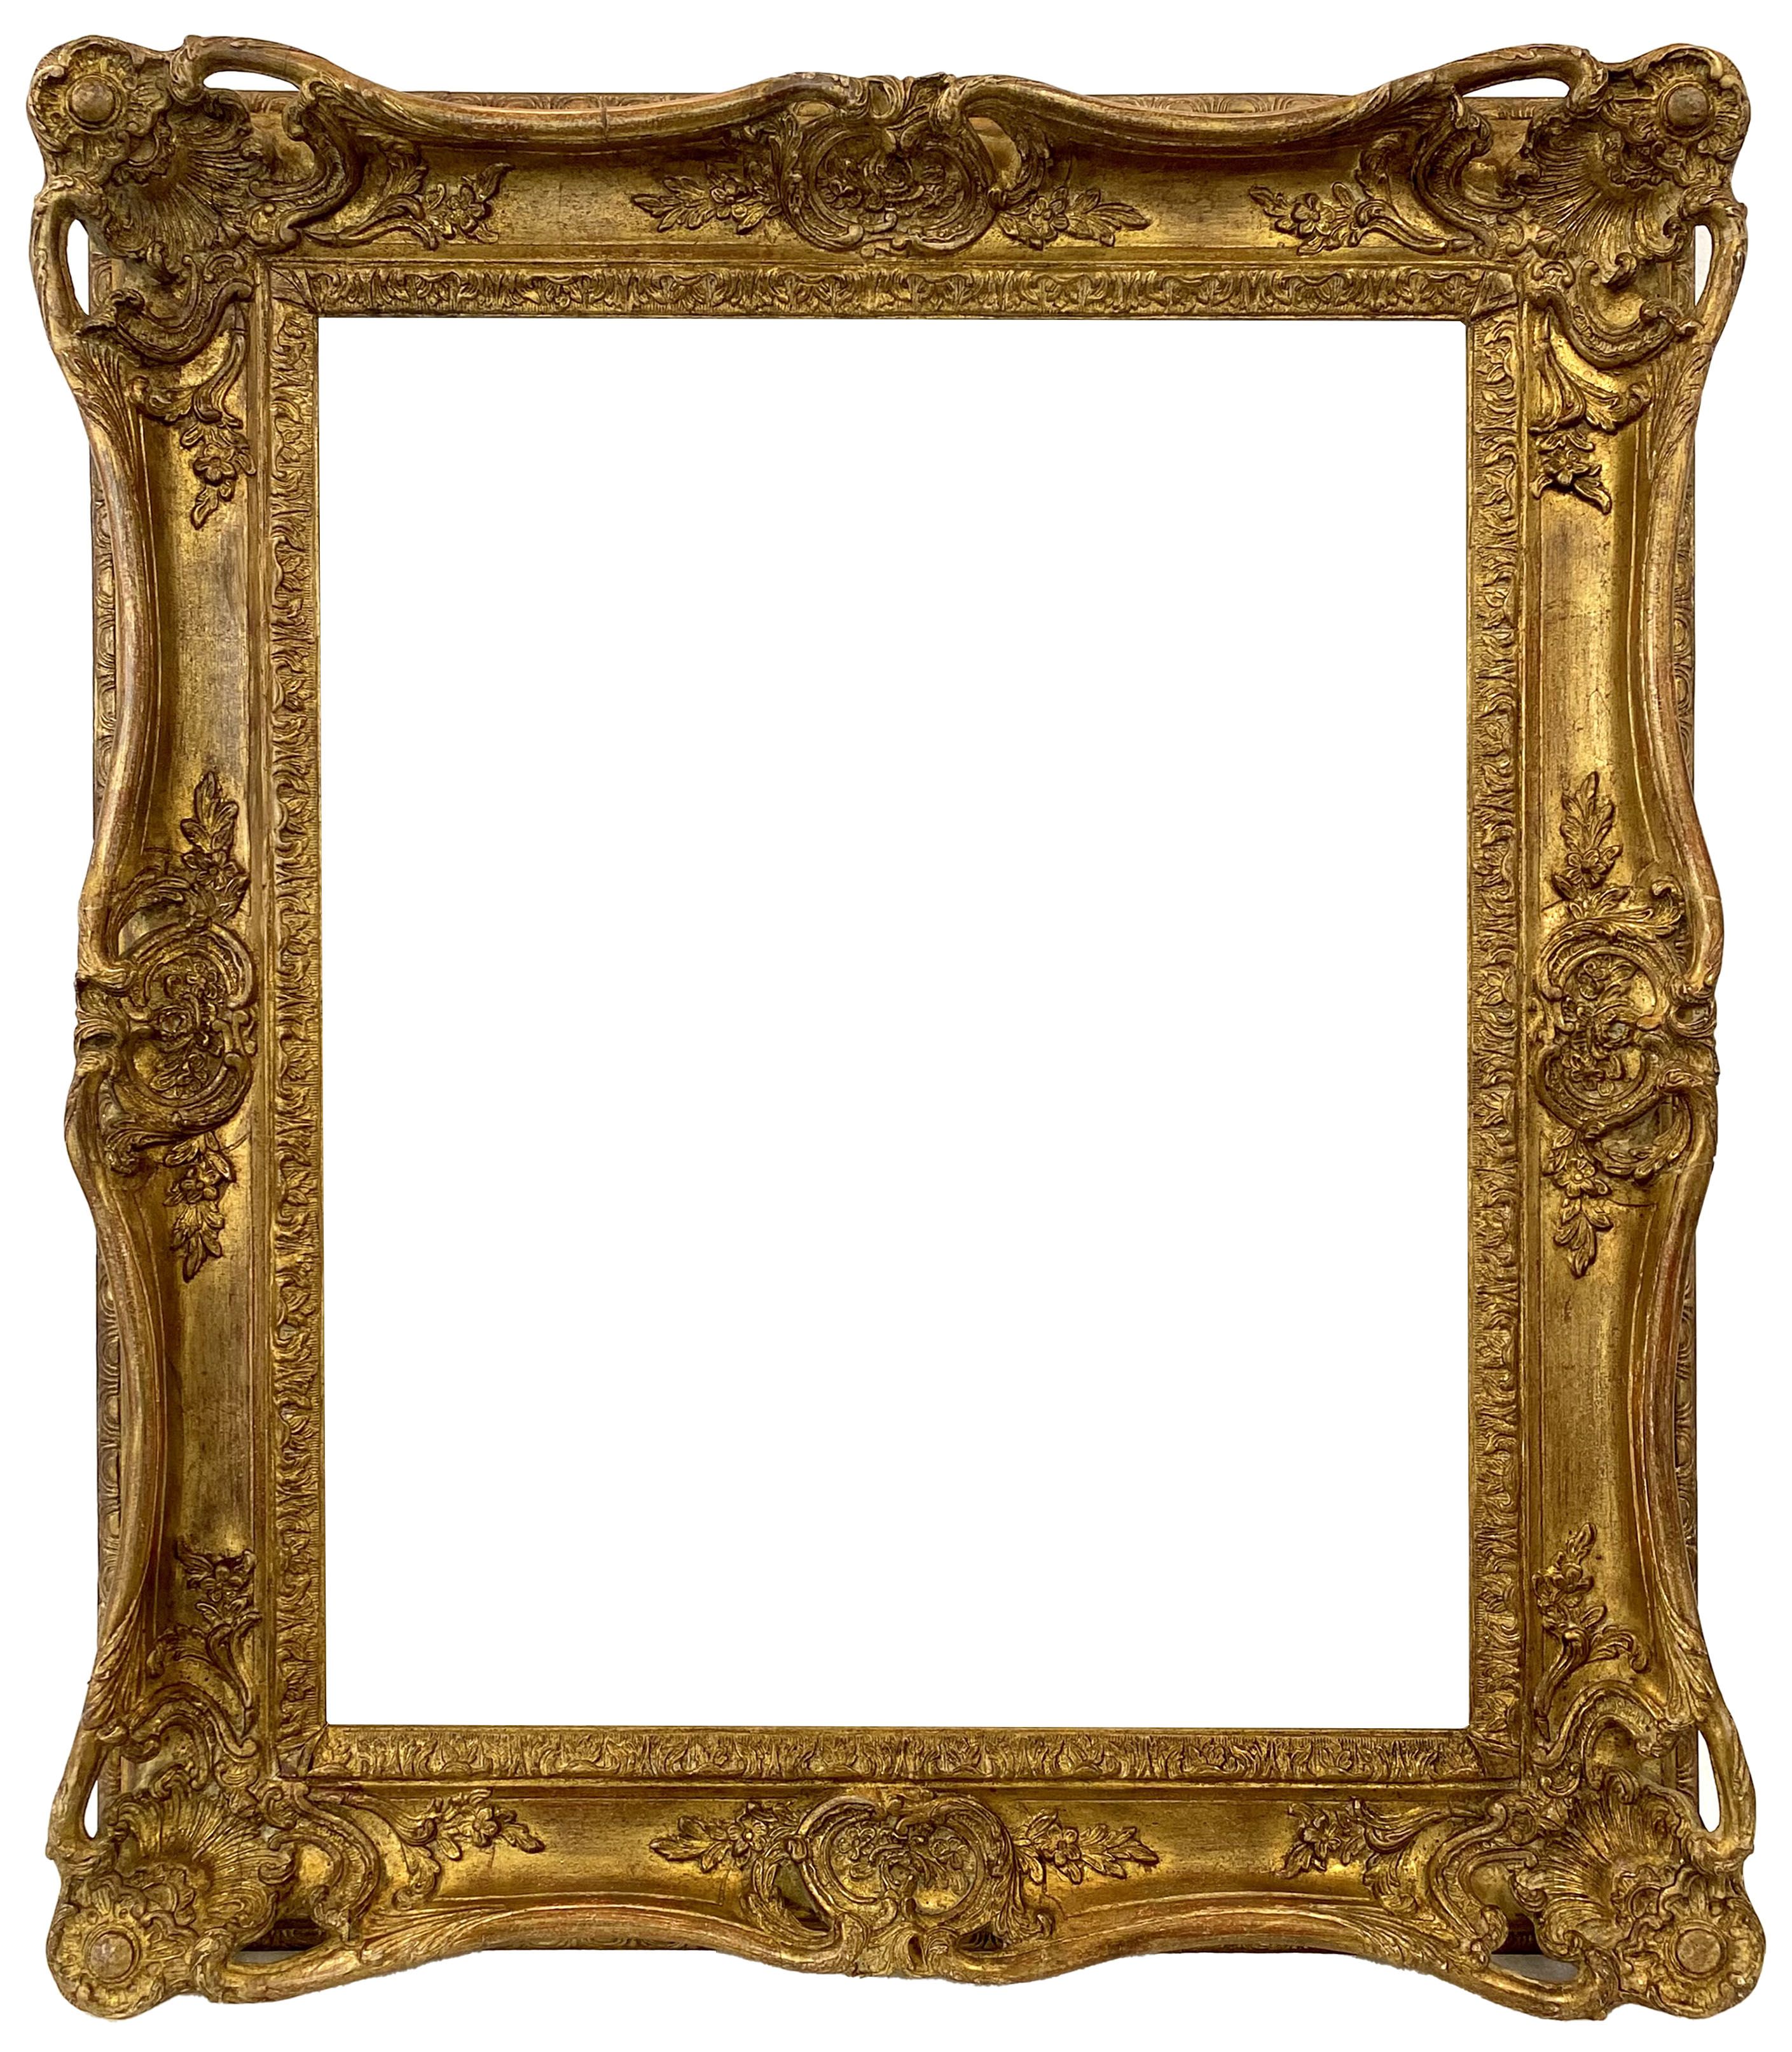 Cadre de style Louis XV - 59,10 x 48,80 - REF - 1269